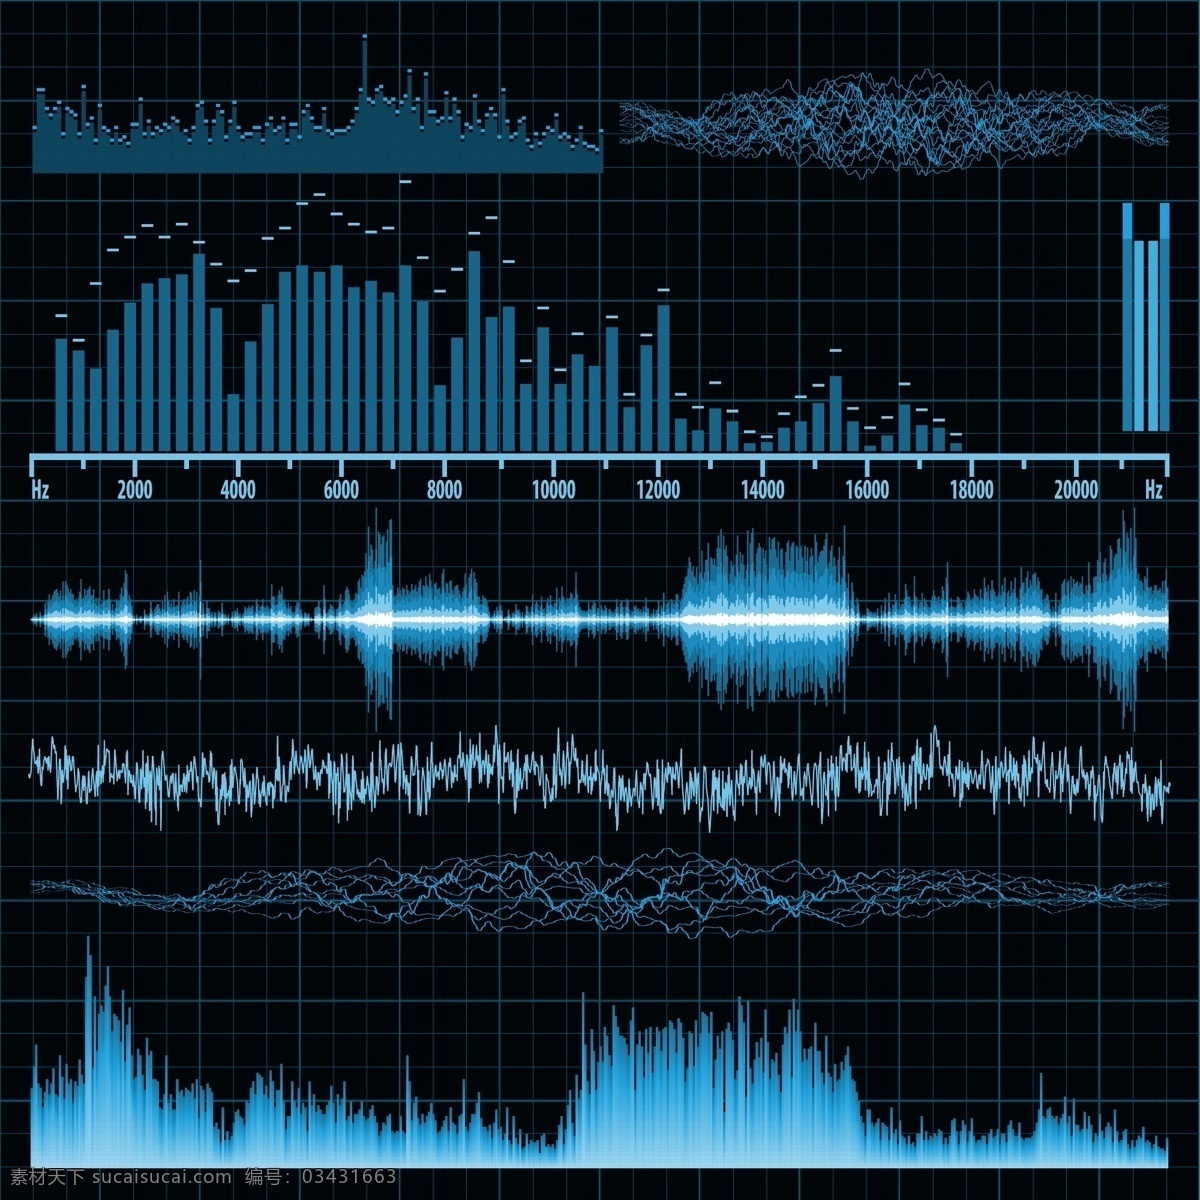 音频 带 材料 矢量 声波 频率 乐队 矢量素材 音乐 音响 其他载体 矢量图 其他矢量图